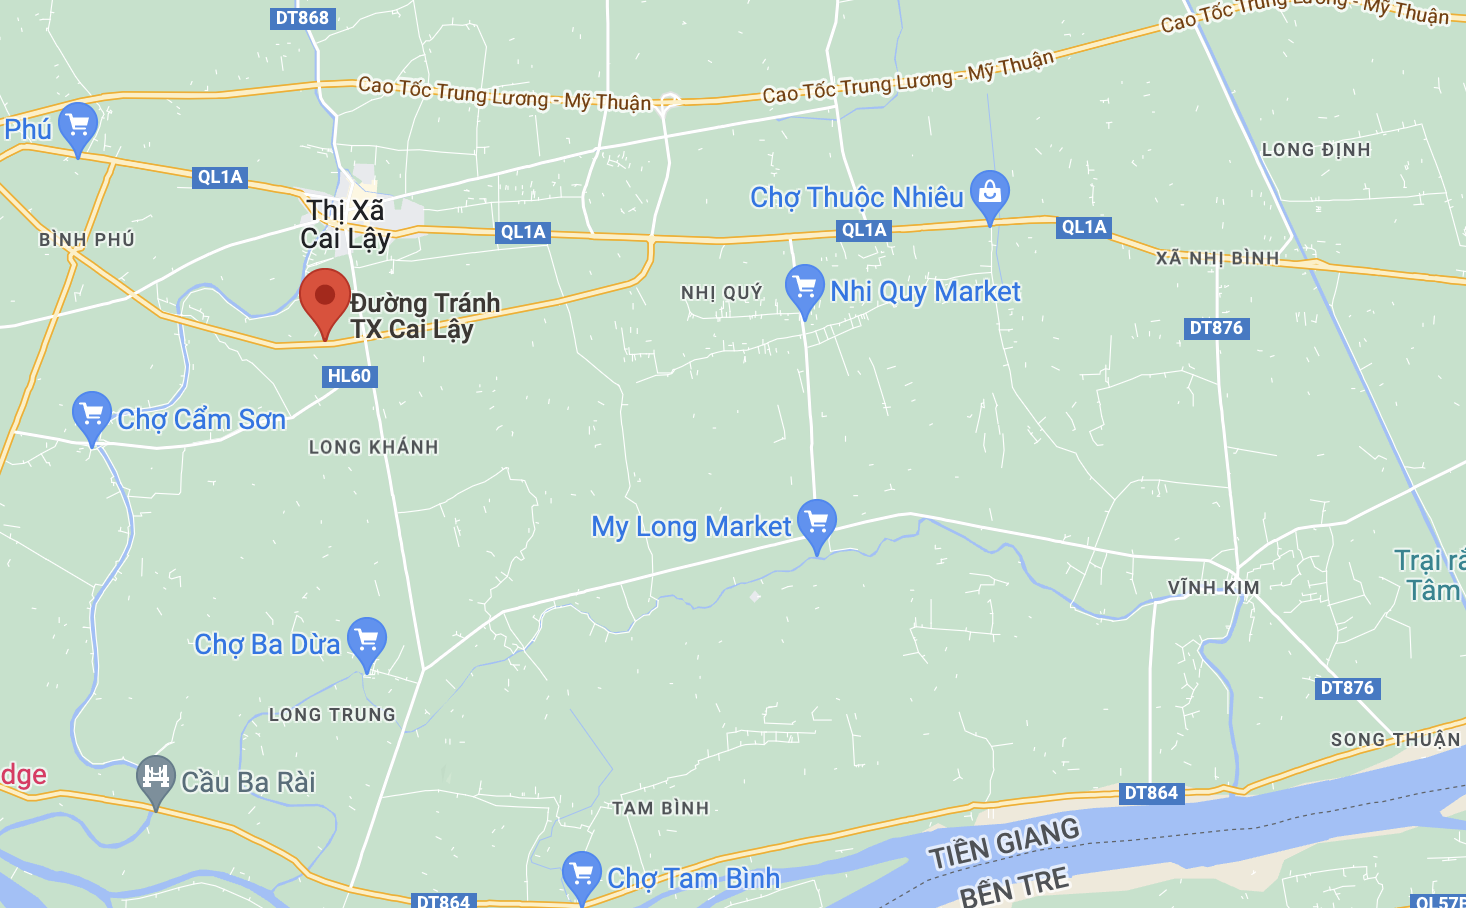 Vụ tai nạn xảy ra trên đường tránh Cai Lậy, Tiền Giang. Ảnh: Google Maps.